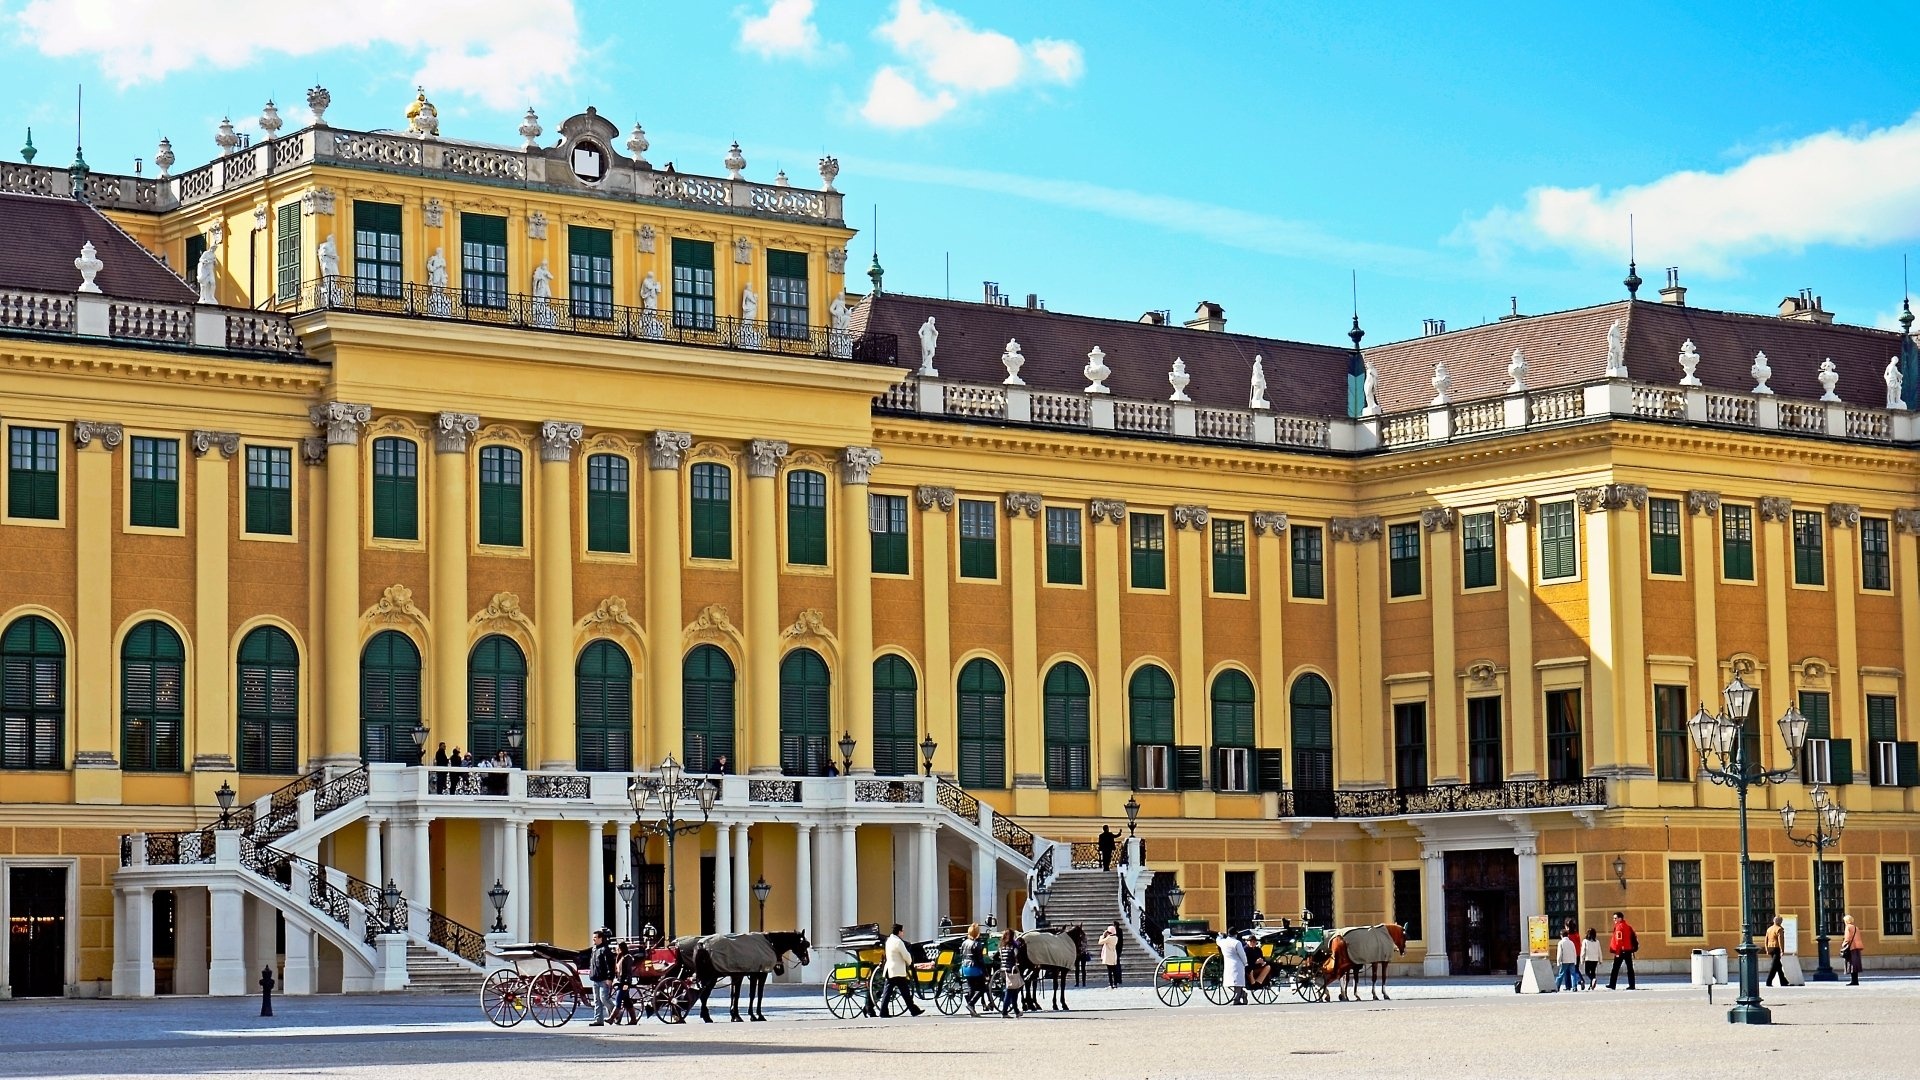 Schonbrunn Palace, HD wallpaper, Background image, Schnbrunn palace, 1920x1080 Full HD Desktop